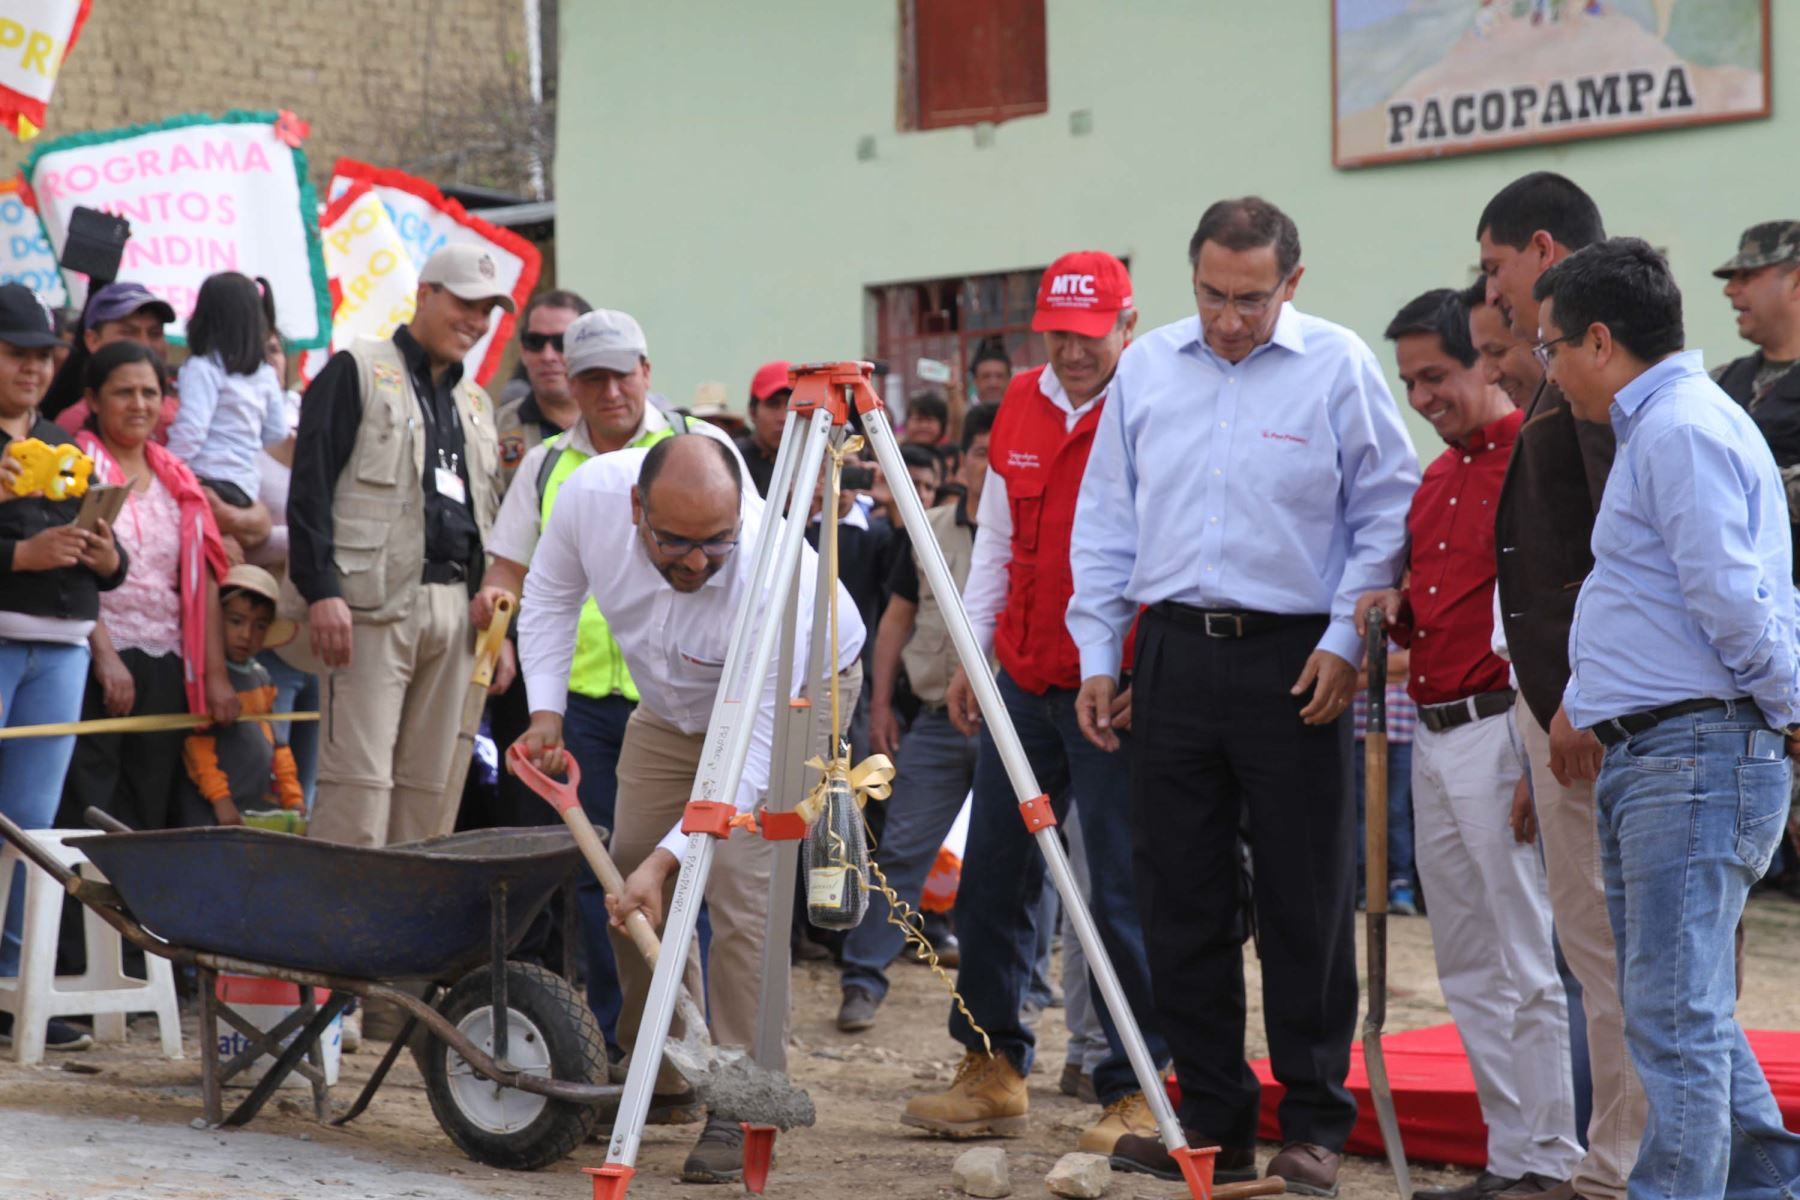 El presidente Martín Vizcarra y el ministro de Educación, Daniel Alfaro, dieron inicio a las obras en el centro poblado de Pacopampa, región Cajamarca.